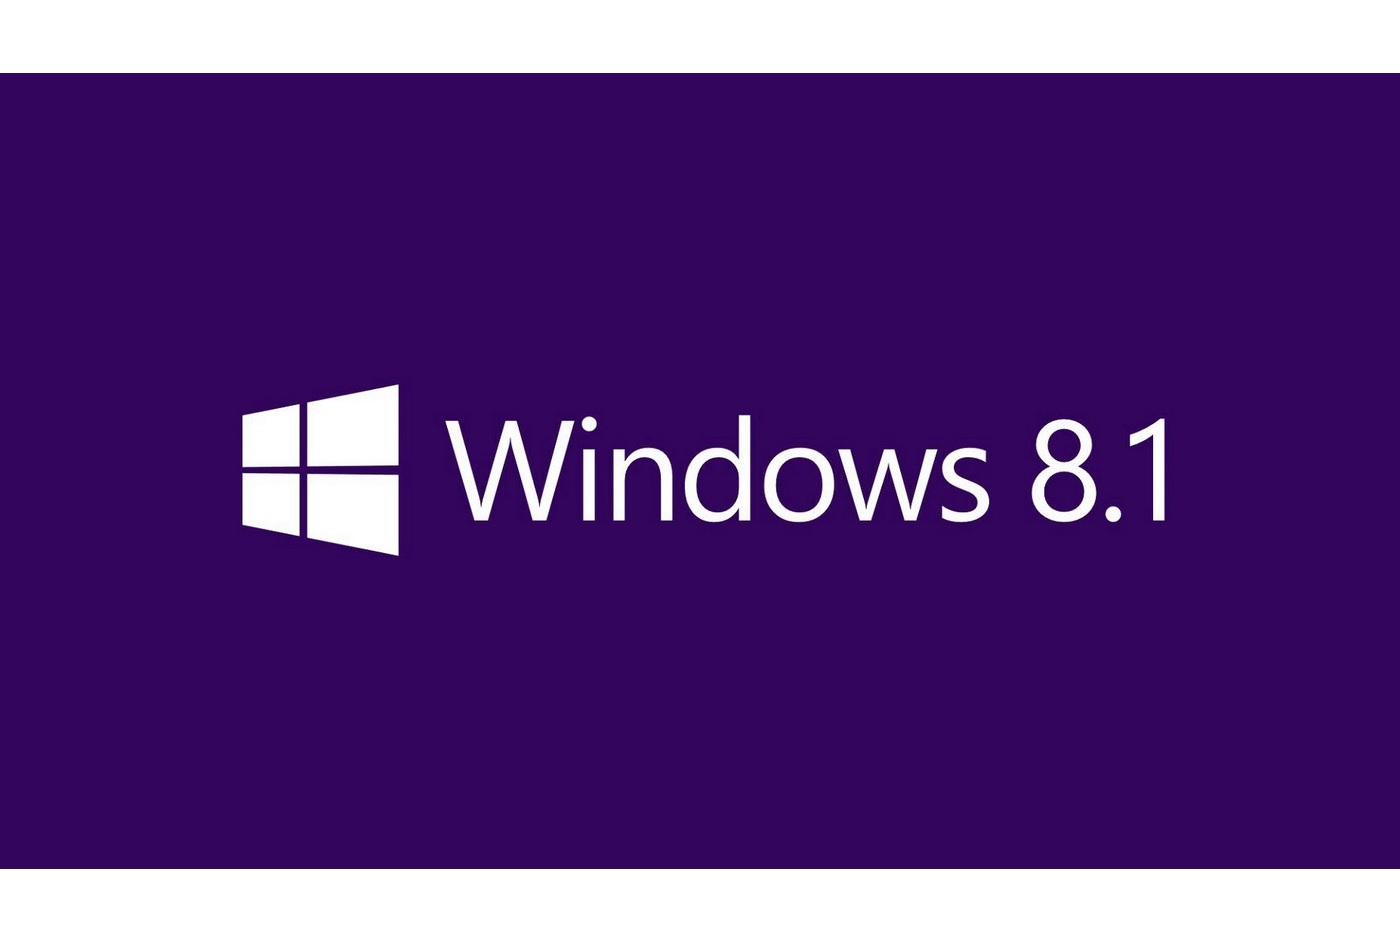 Microsoft commence à prévenir les utilisateurs de la fin de vie de Windows 8.1